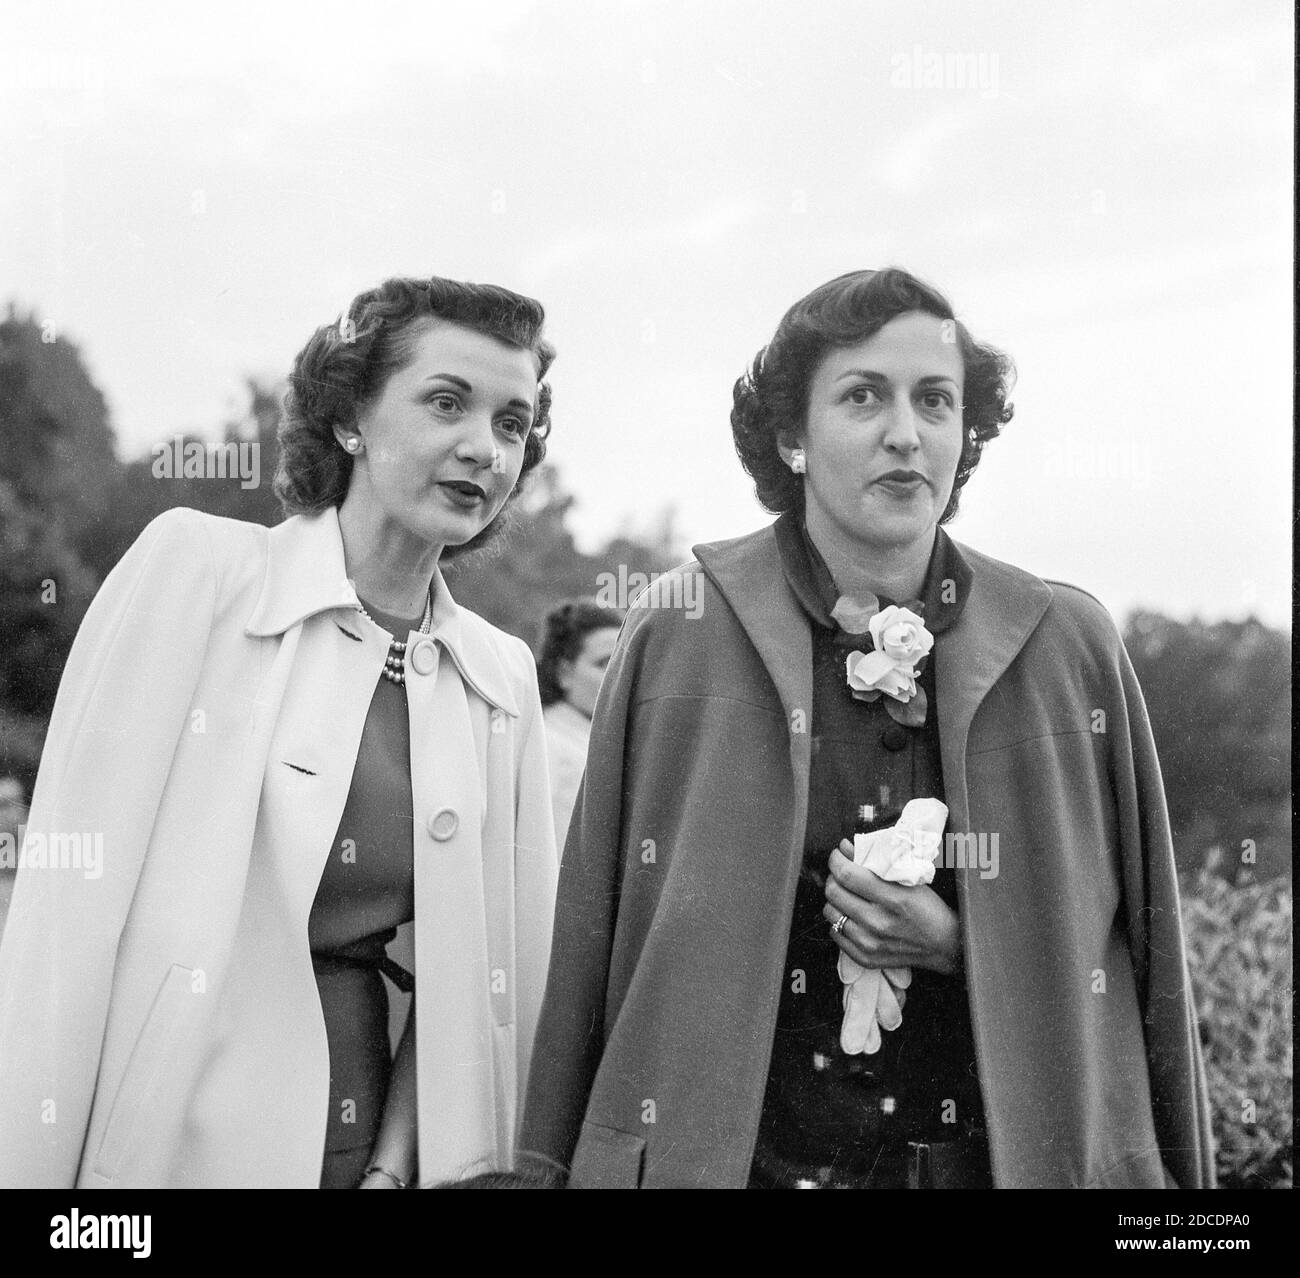 Dos mujeres morenette atractivas visitando, 1952, EE.UU. Foto de stock